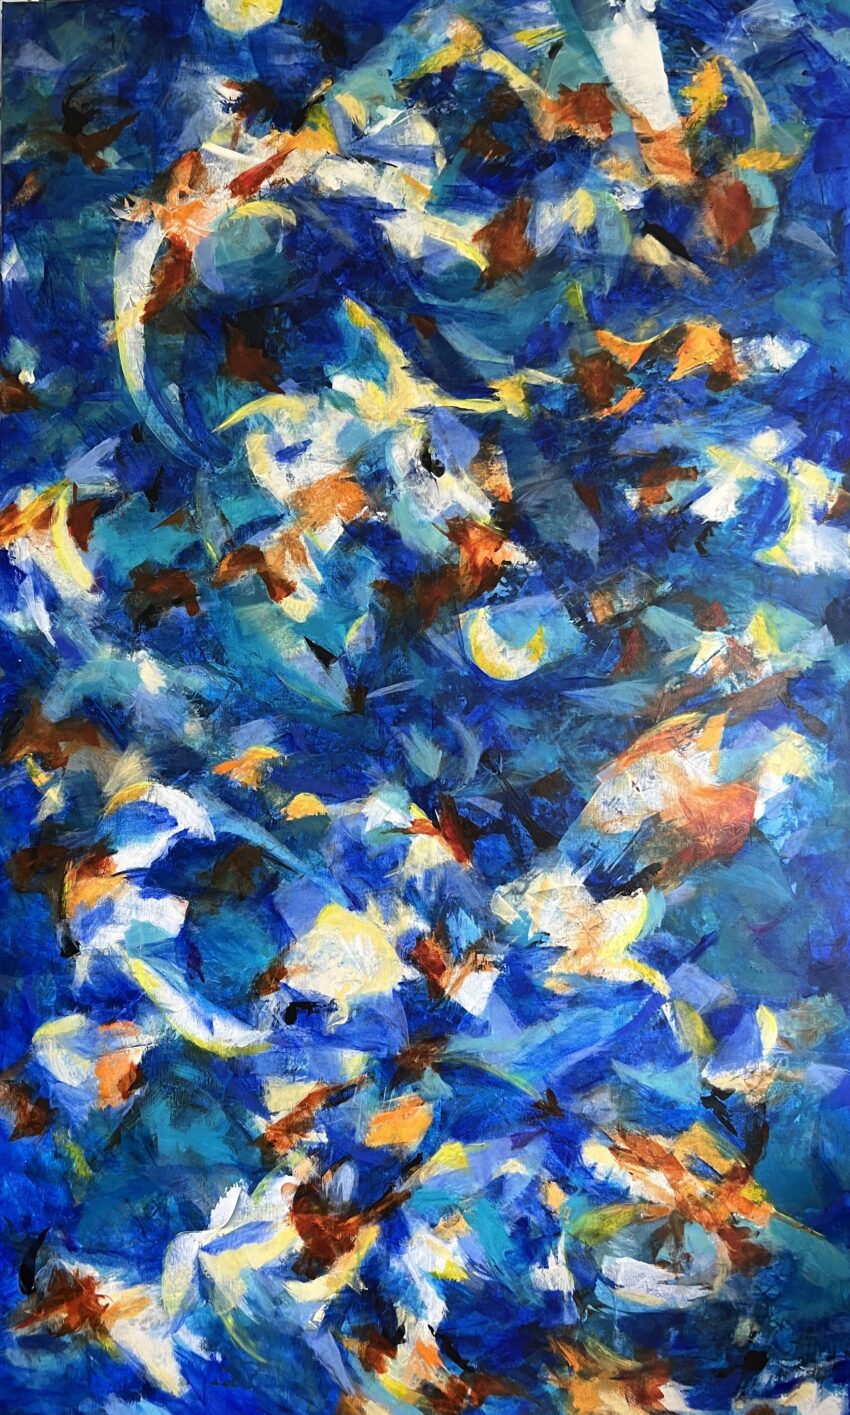 Englenes dans Stort abstrakt maleri med mange blå nuancer og dybde. Der er masser af mulighed for at gå på opdagelse i maleriet.